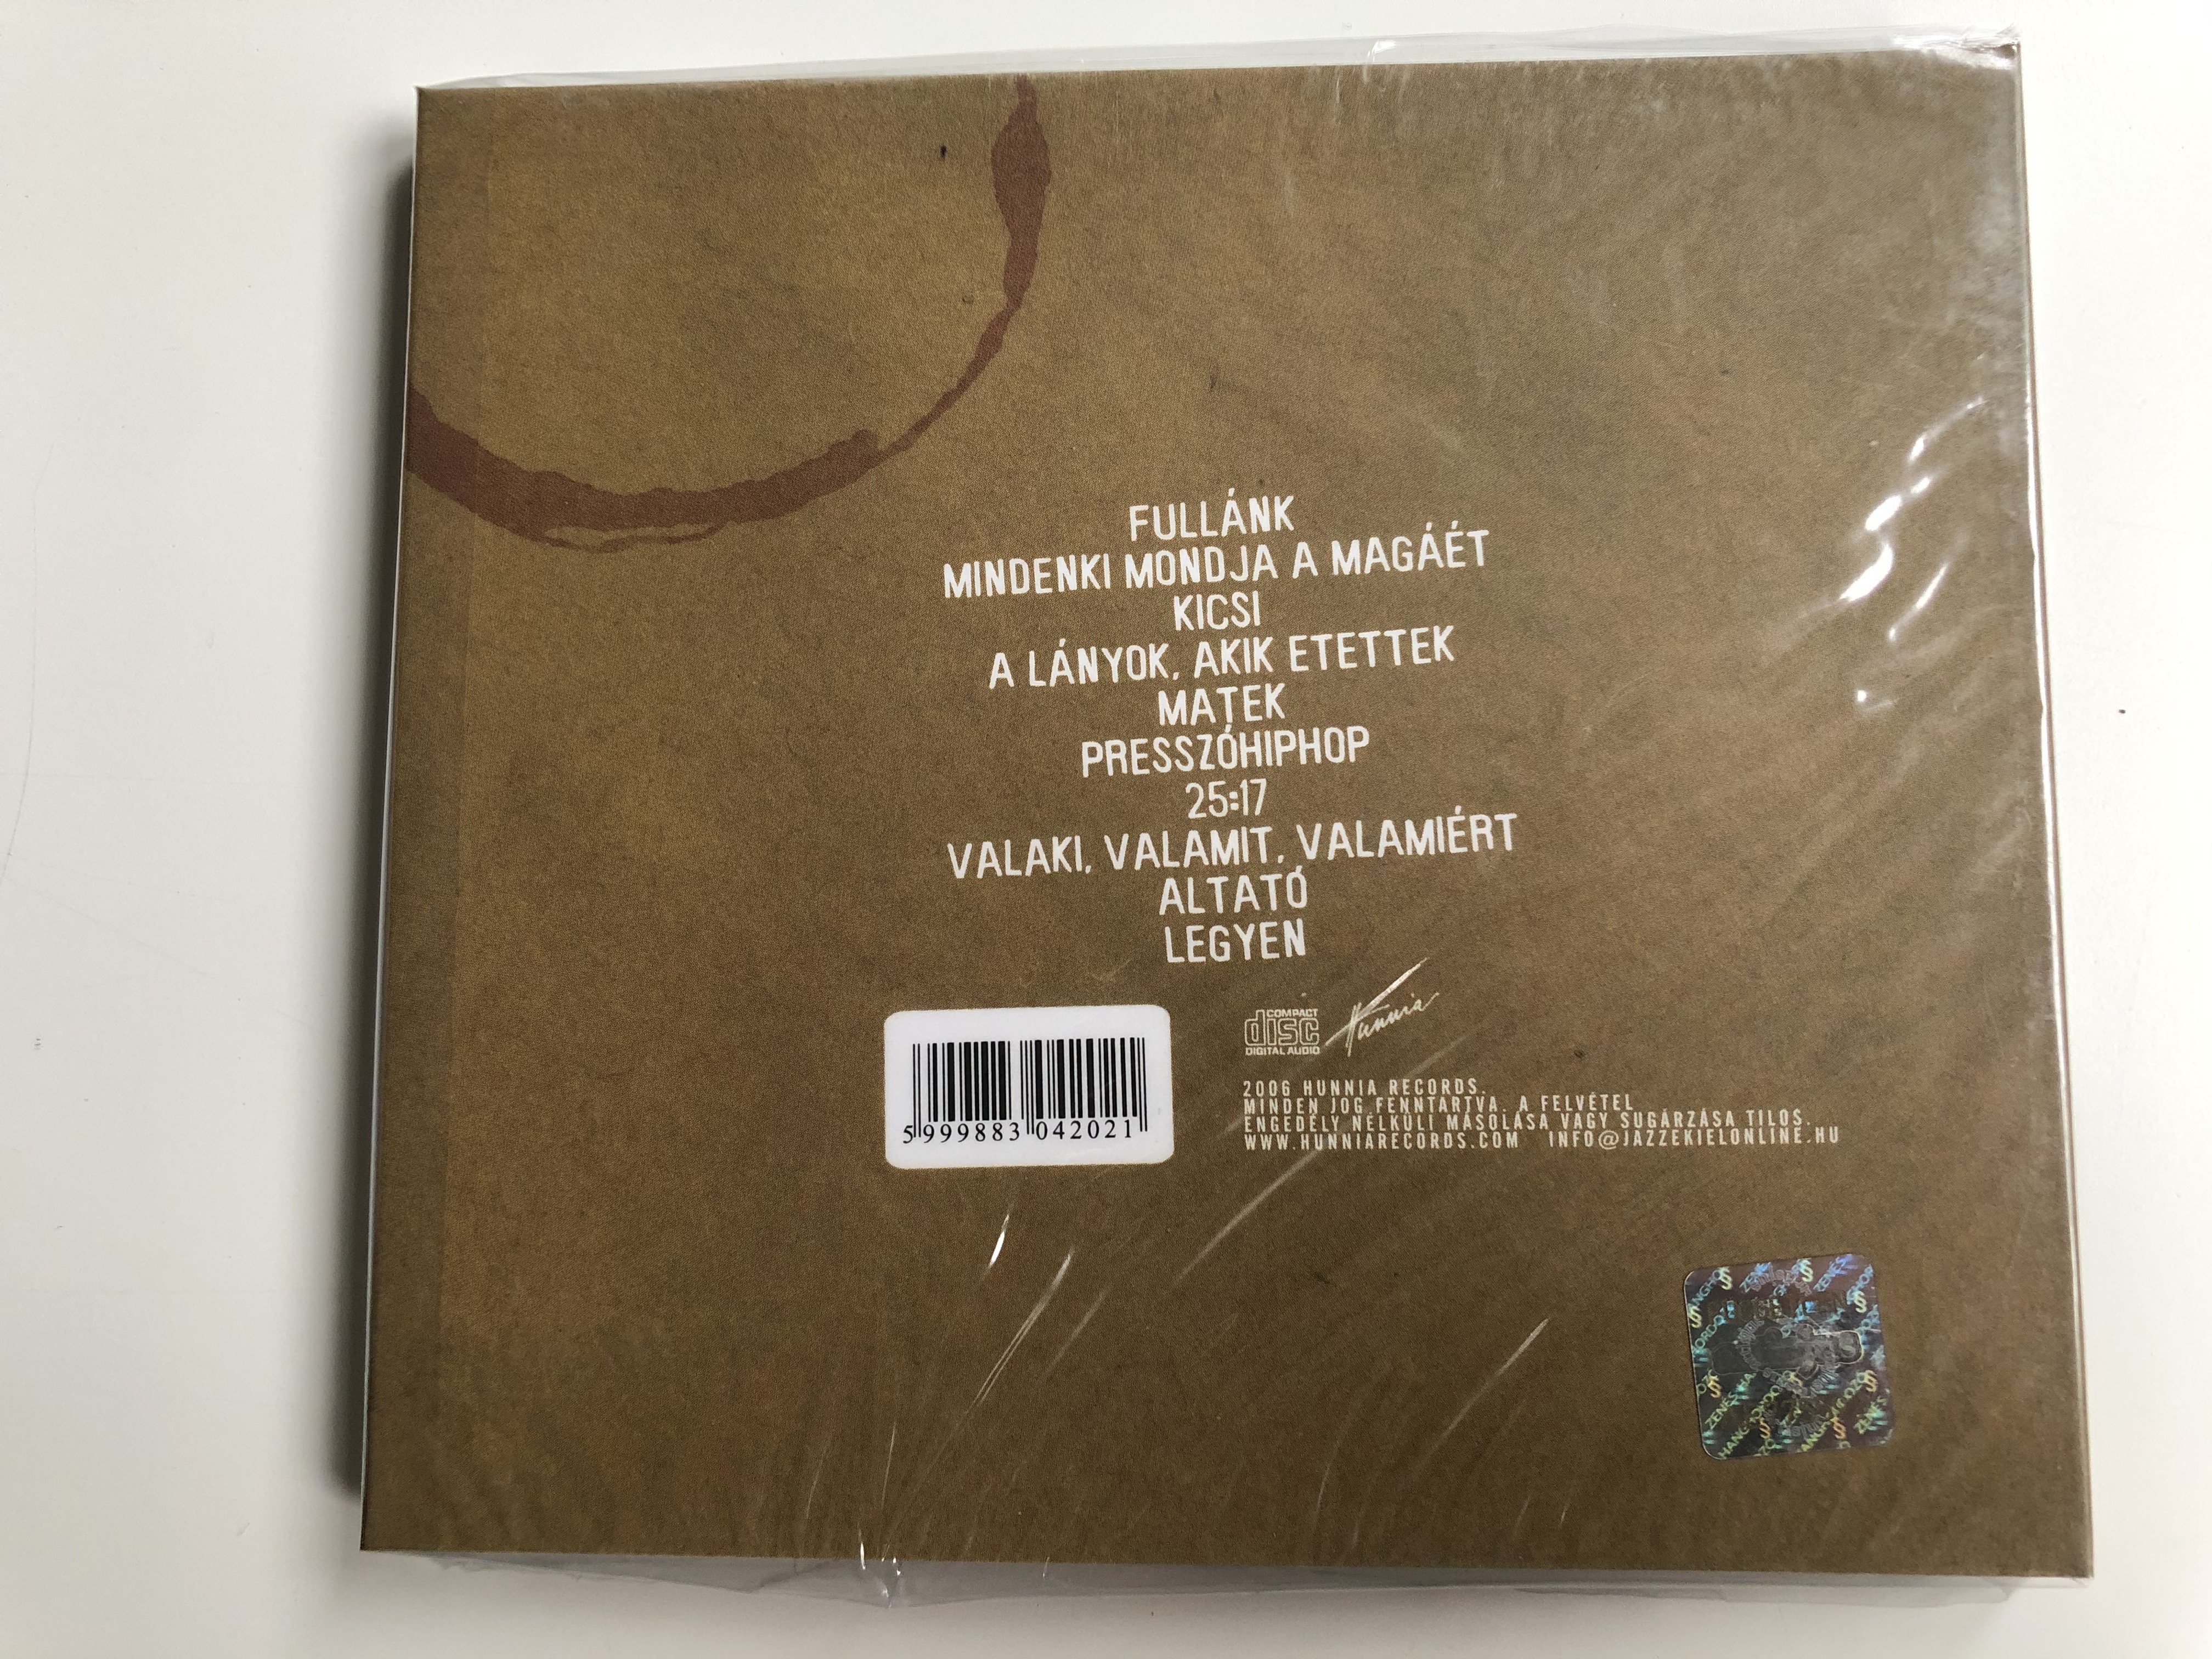 jazz-kiel-hunnia-records-audio-cd-2006-hrcd602-2-.jpg